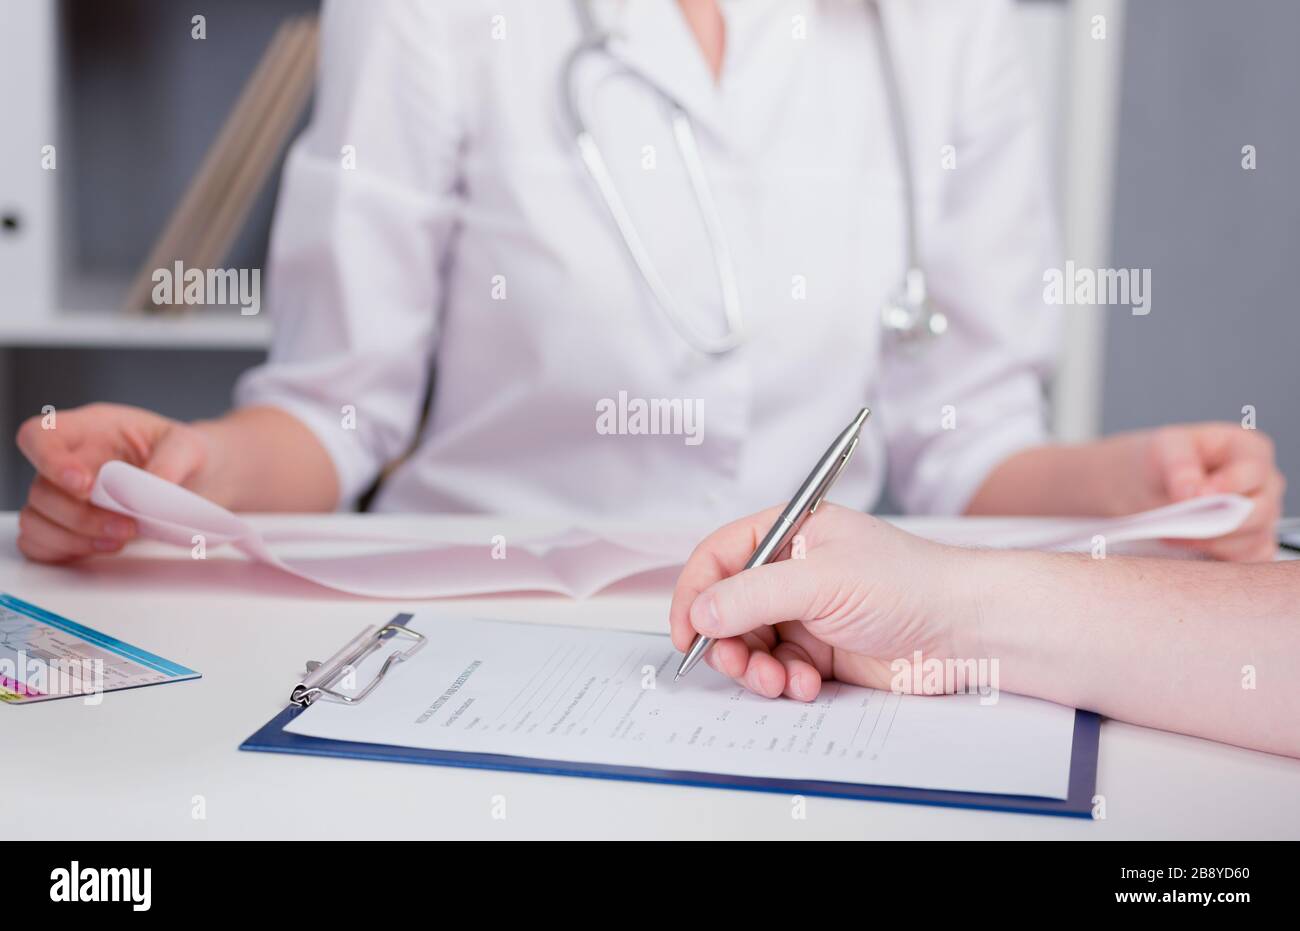 Der Patient füllt den Fragebogen in einer Arztpraxis aus. Stift in der Hand. Die Bildtiefe des Feldes. Stockfoto